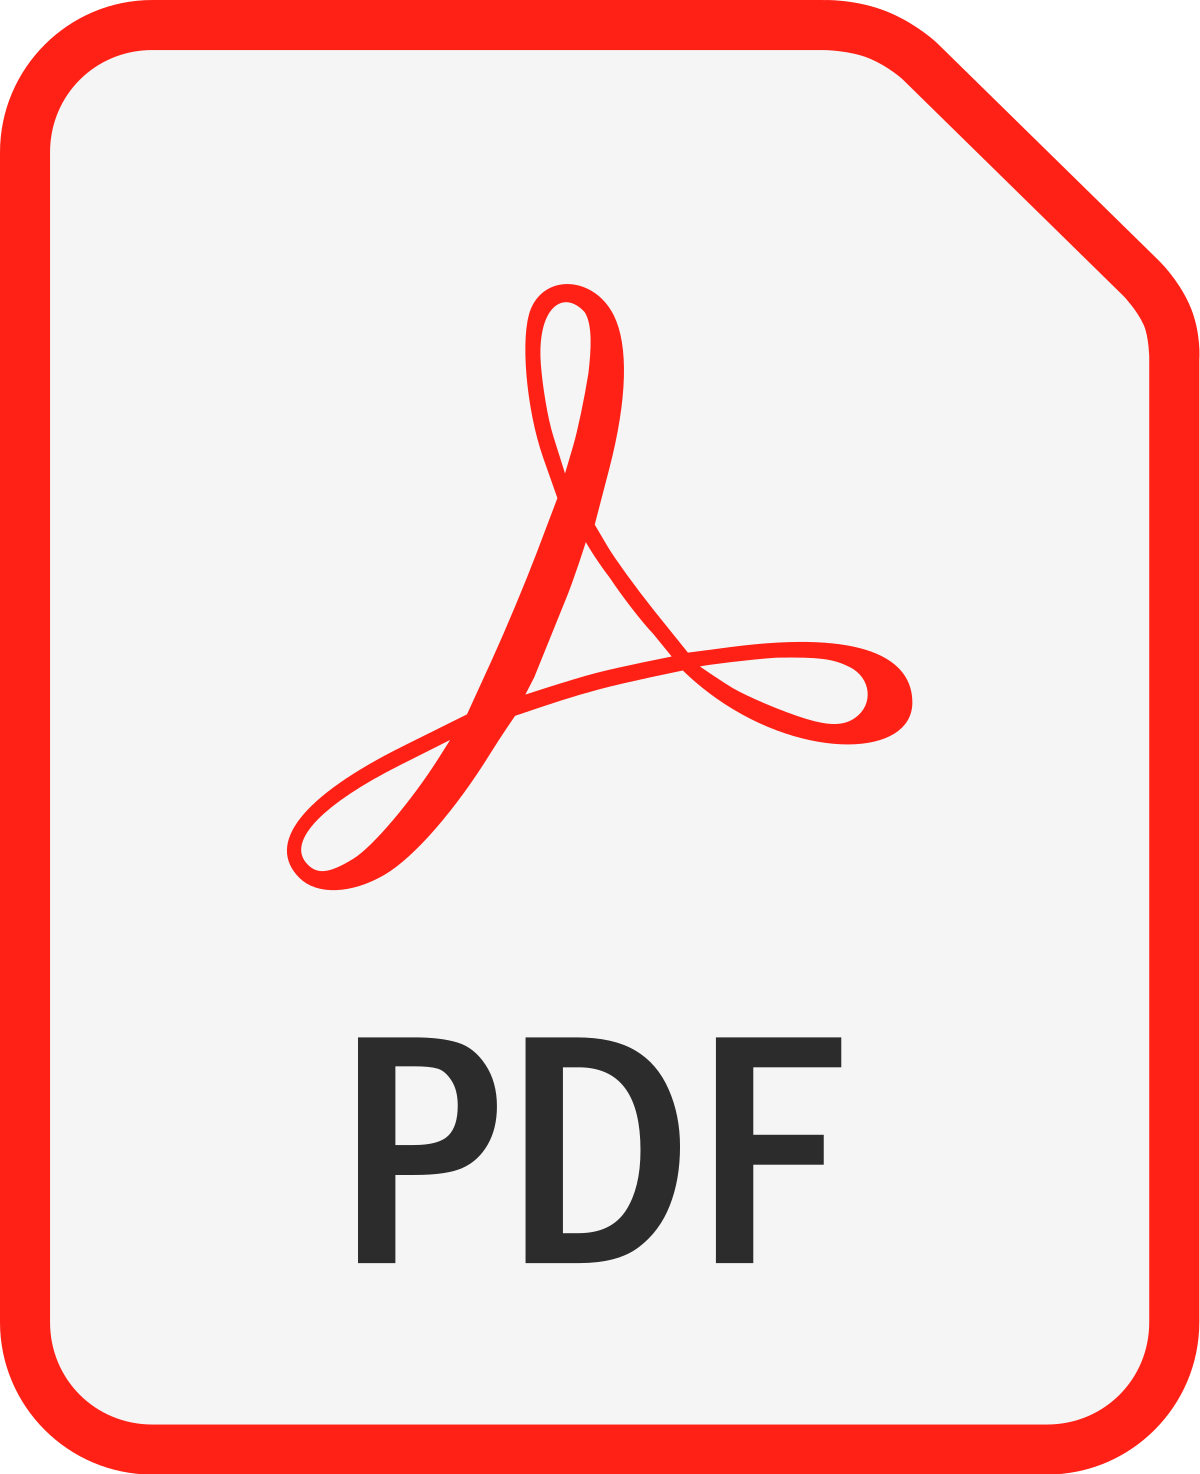 تحميل برنامج pdf عربي مجانا لكافة الاجهزة رابط مباشر Adobe acrobat Reader 2020